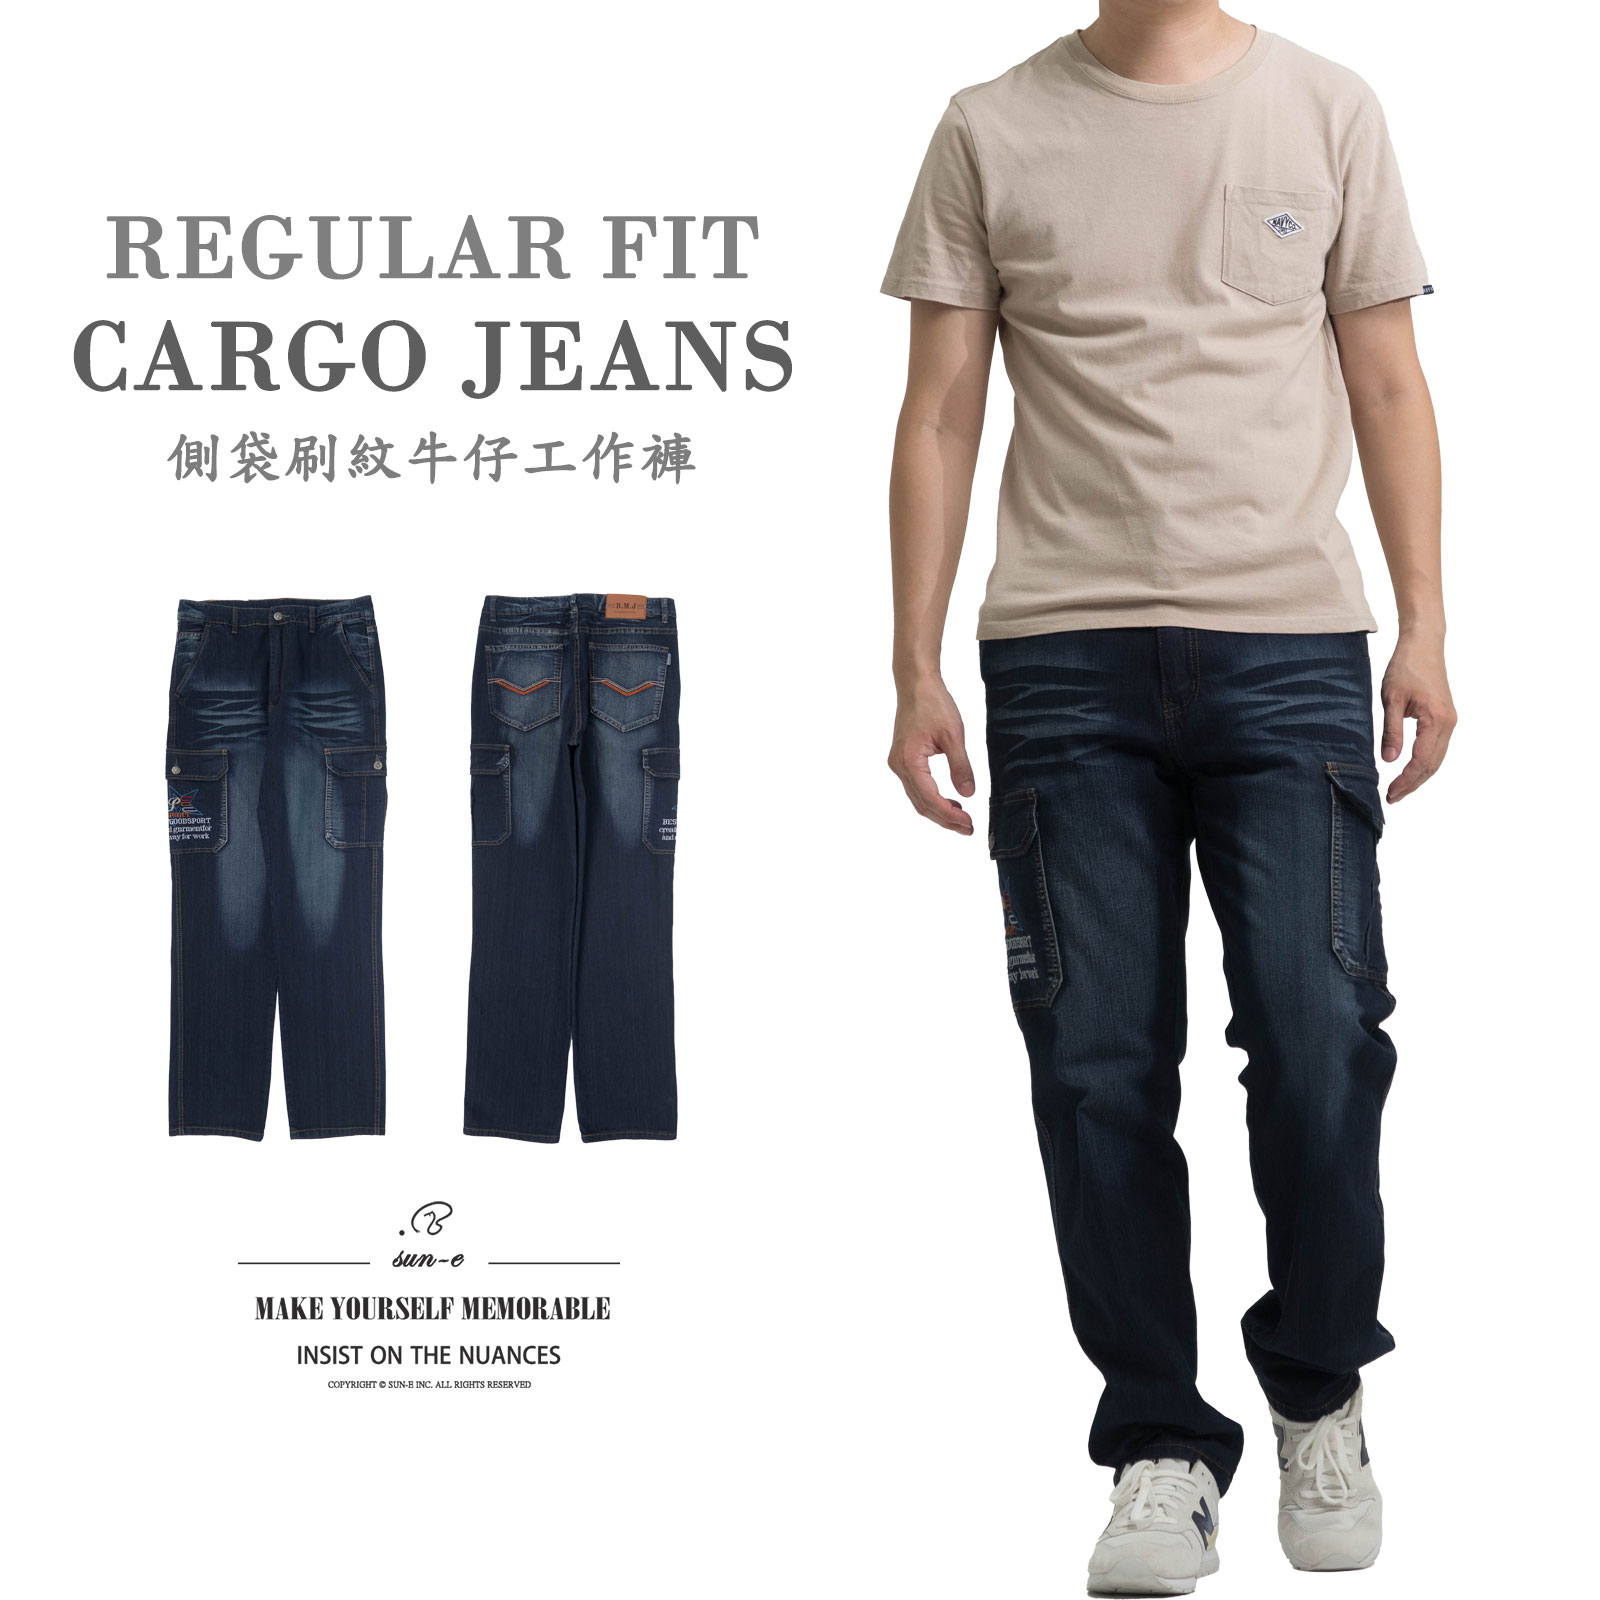 伸縮刷紋工作褲 多口袋工作長褲 刷白牛仔長褲 車繡口袋側貼袋長褲 Cargo Jeans Denim Cargo Pants Regular Fit Jeans Embroidered Pockets Stretch Jeans (321-0582-08)深牛仔 L XL 2L 3L 4L 5L(腰圍:30~41英吋/76~104公分) 男 [實體店面保障] sun-e